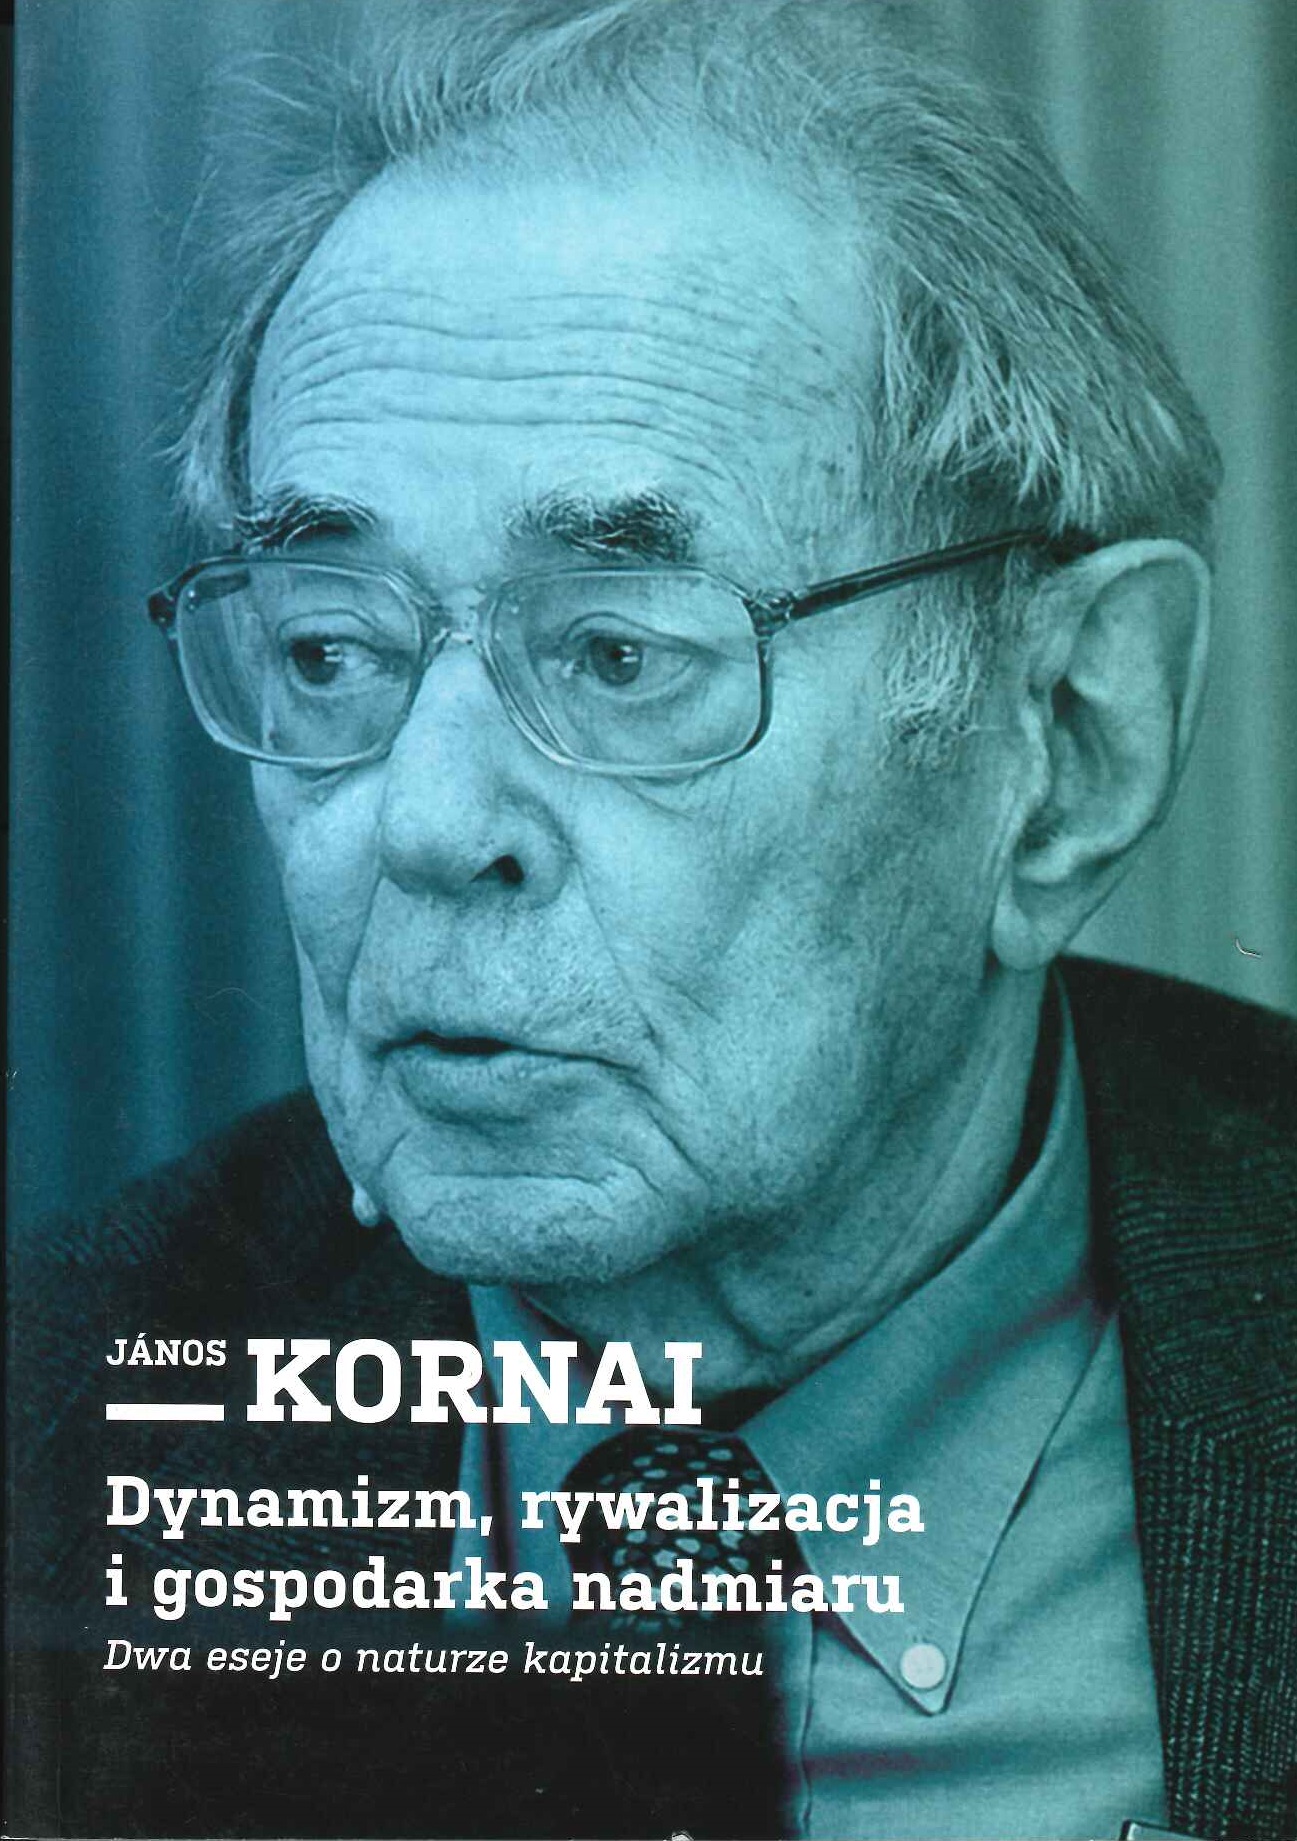 Janos Kornai – Dynamizm, rywalizacja i gospodarka nadmiaru